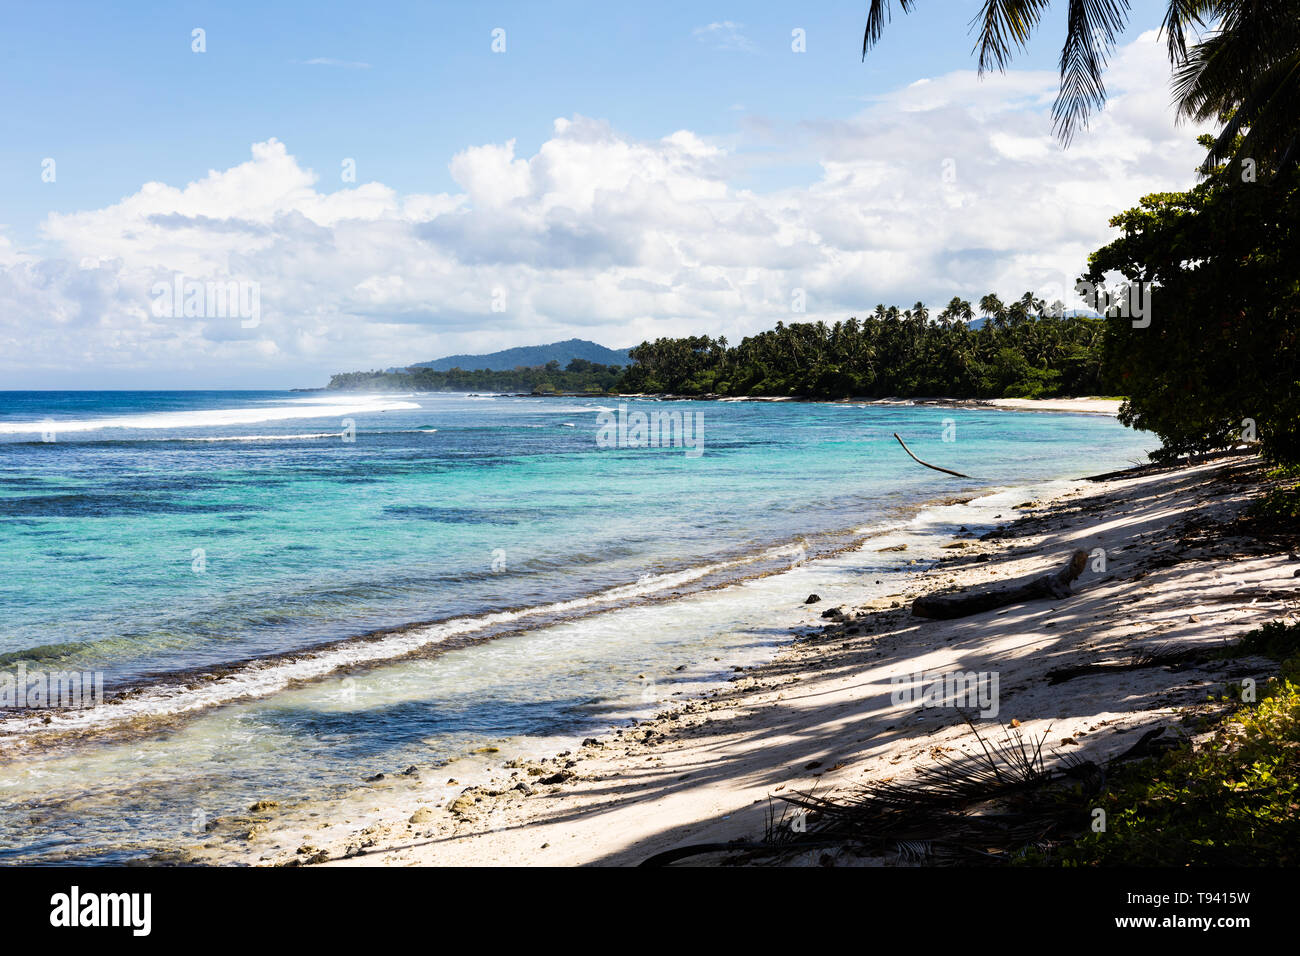 Vista paisaje tropical en la playa en la Polinesia con perfecta de arena blanca, palmeras, sombra de palmeras en primer plano, el océano, con aguas color turquesa y profunda b Foto de stock